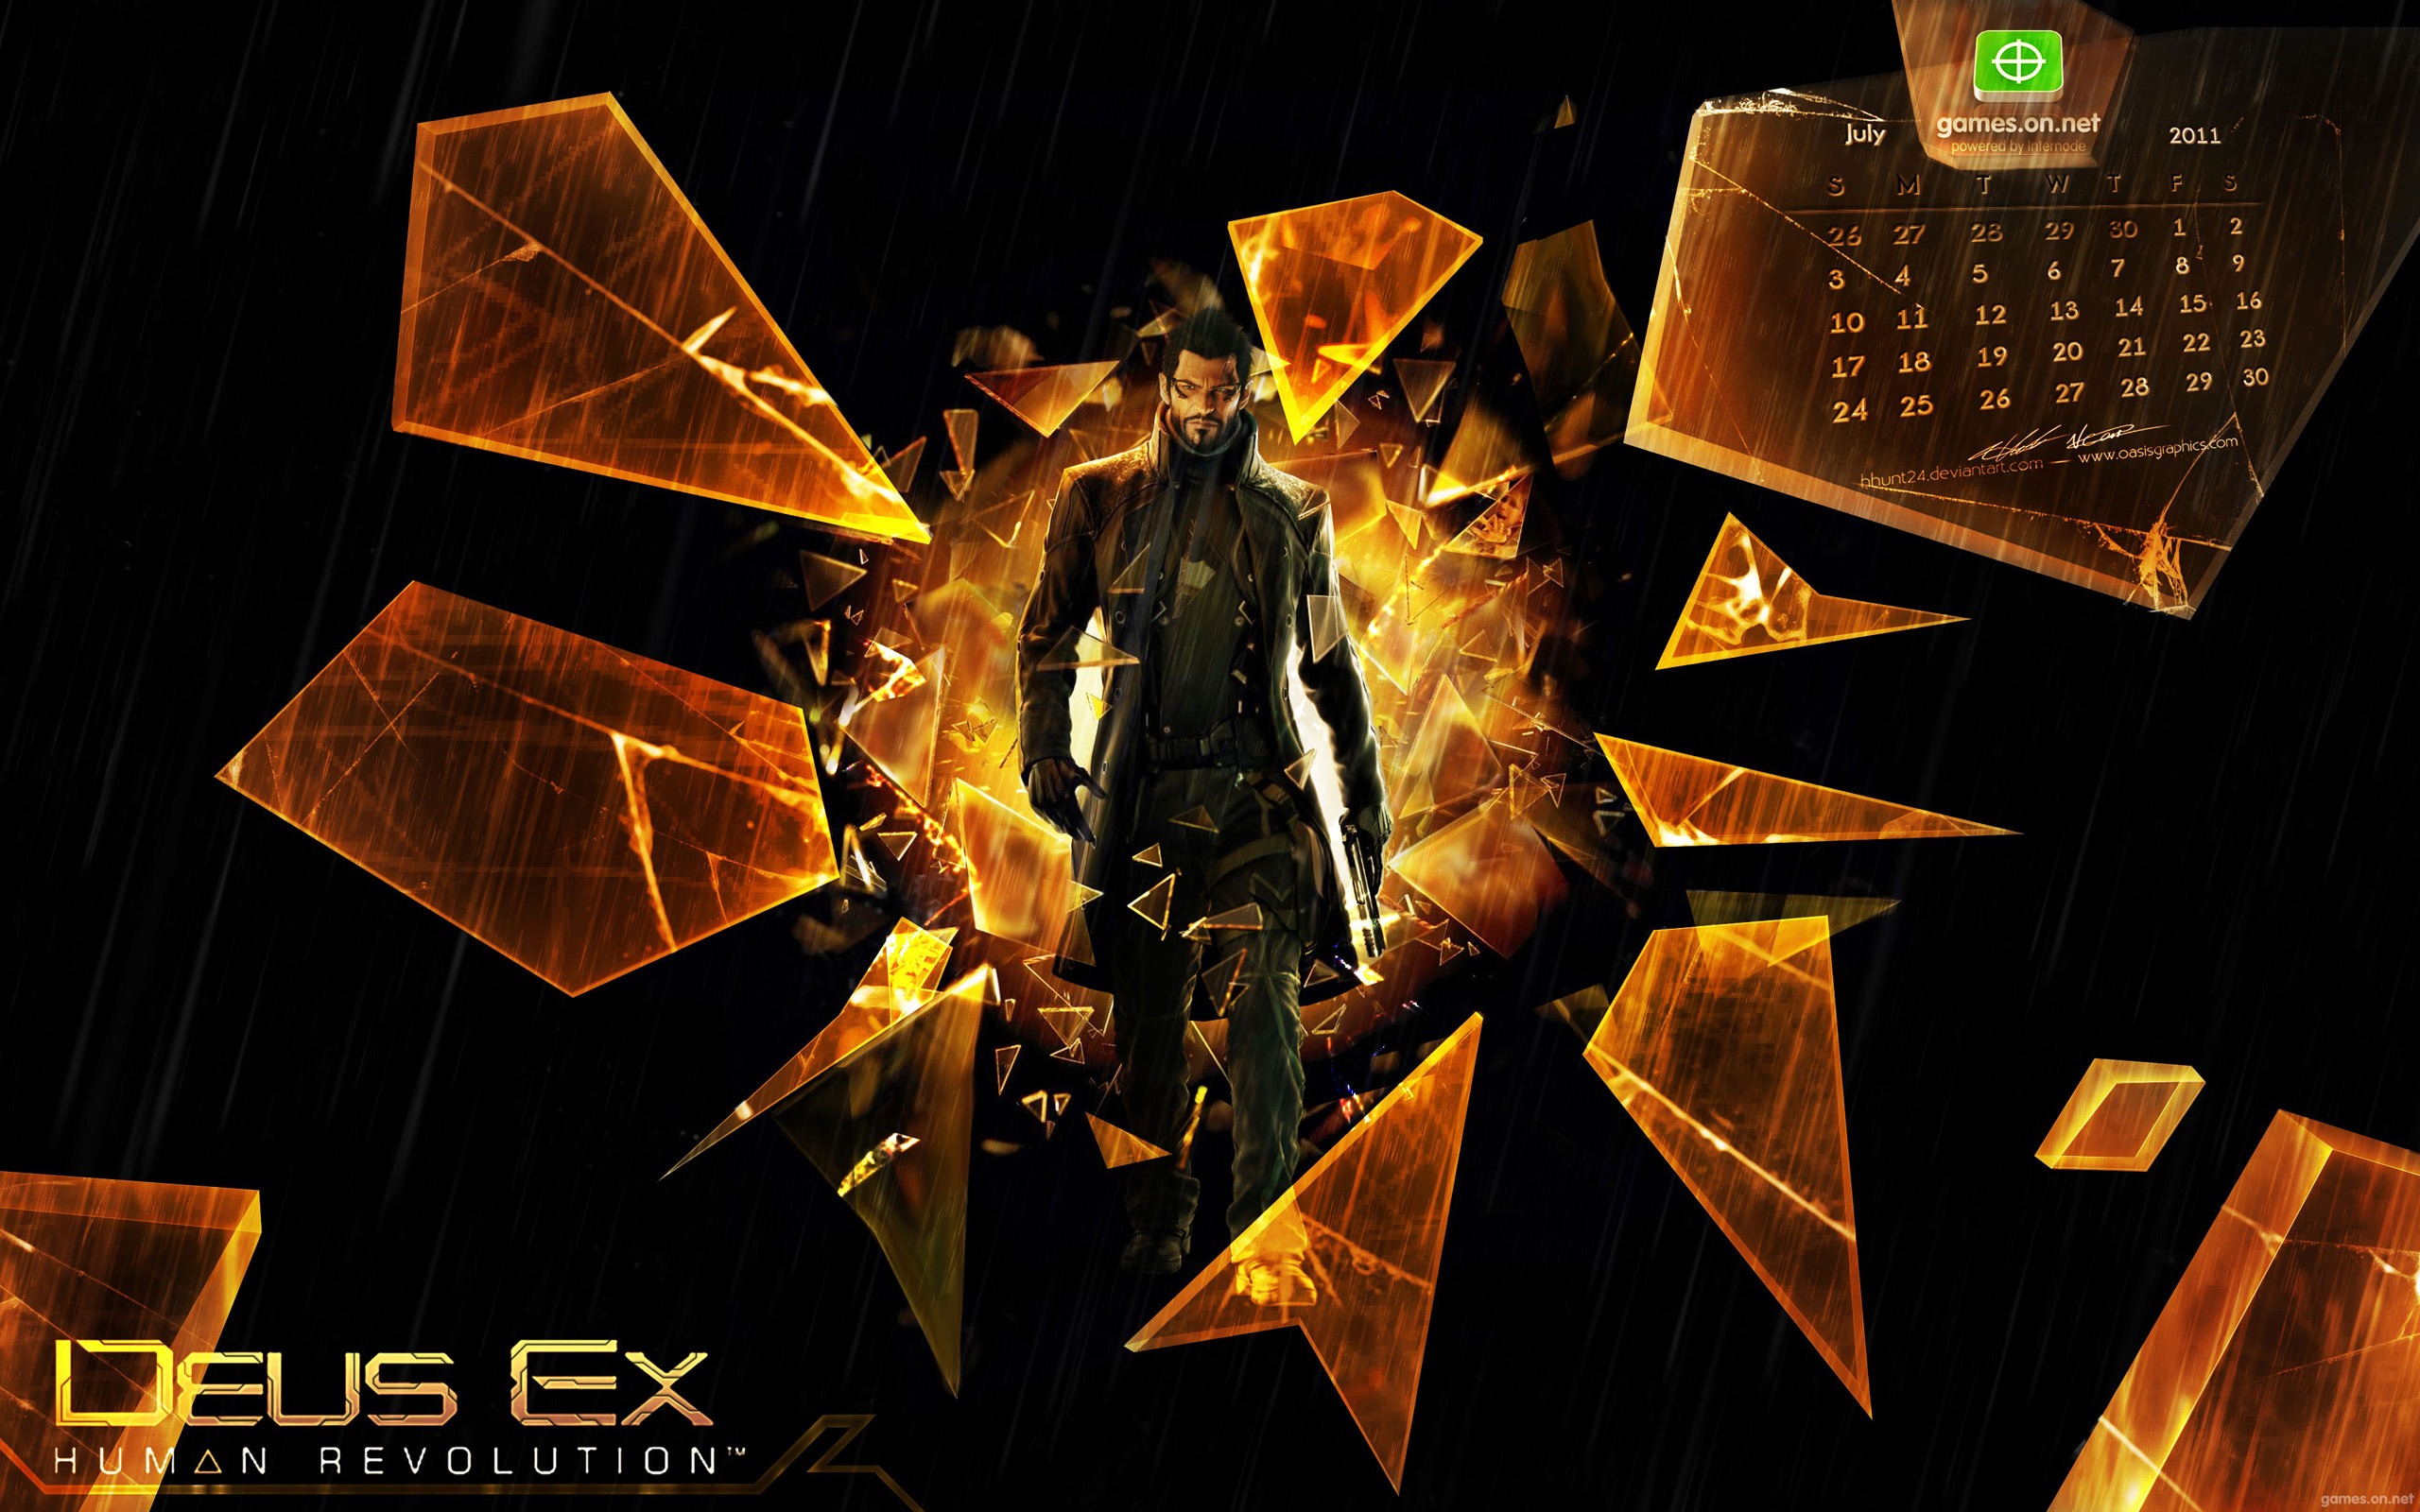 Deus Ex Wallpapers